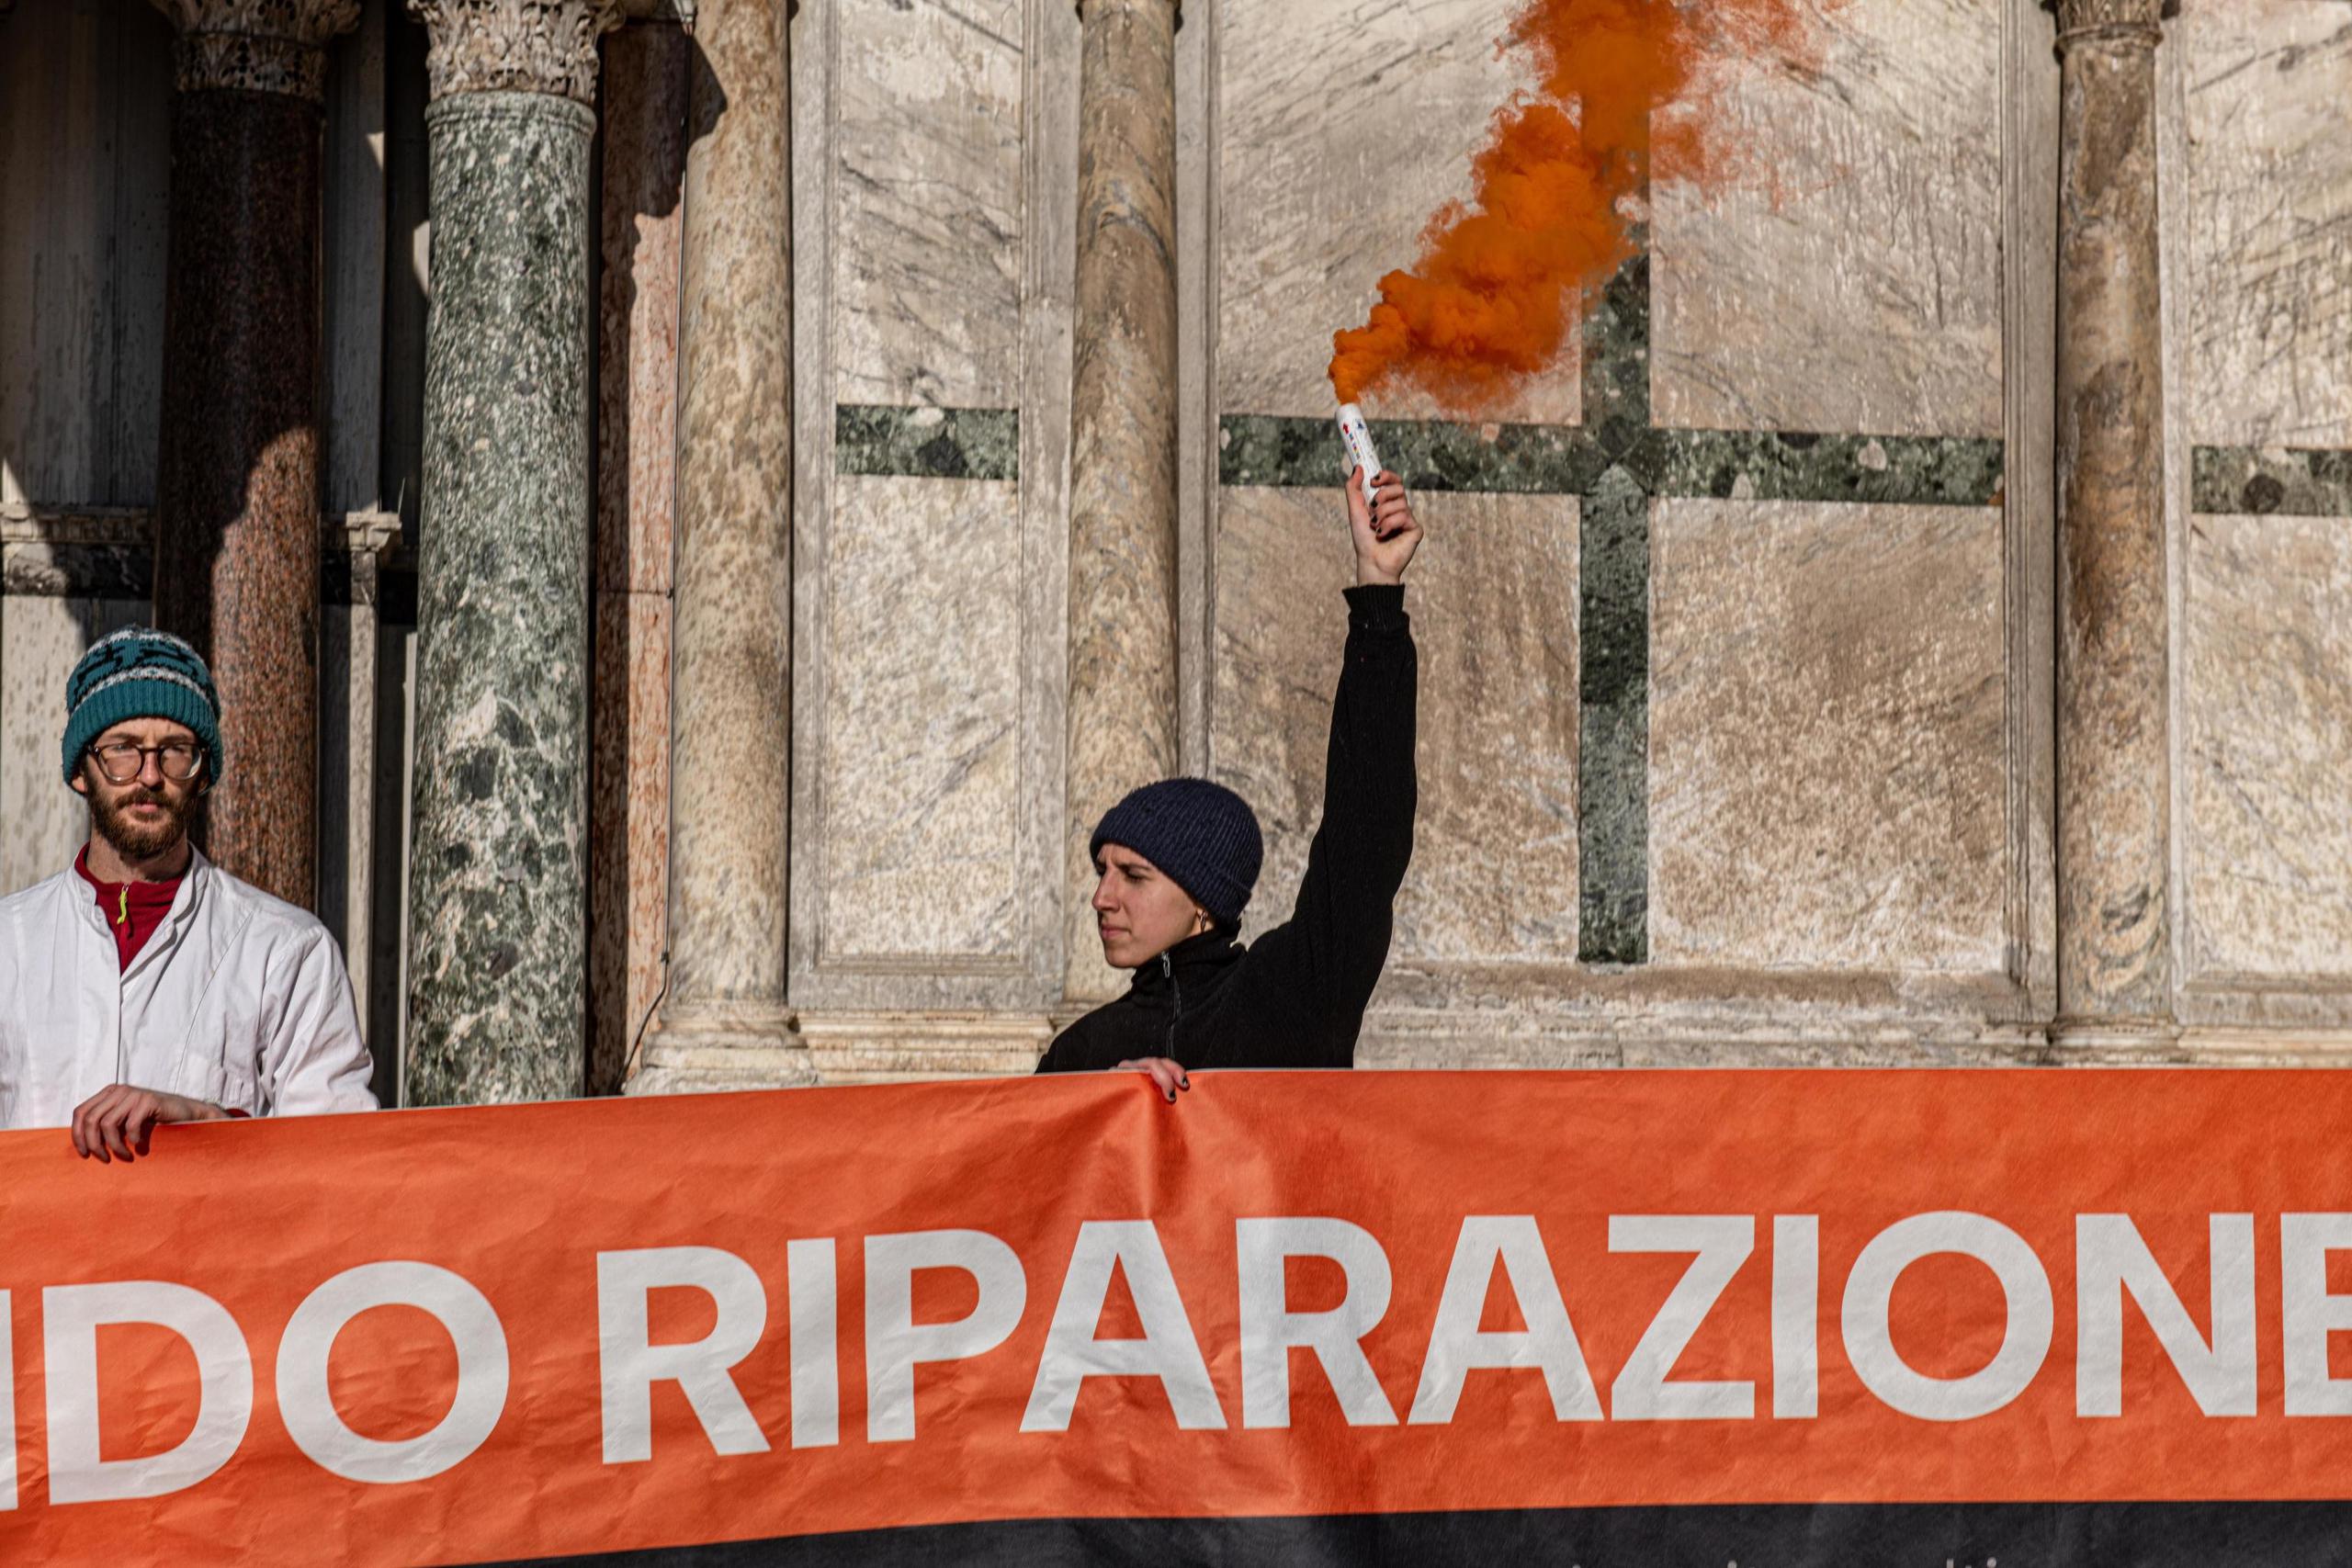 Activistas climáticos sostienen una pancarta después de rociar barro en el exterior de la Basílica de San Marcos durante una protesta en Venecia, Italia, el 7 de diciembre de 2023. Los manifestantes utilizaron extintores para rociar barro líquido en la iglesia paredes, antes de desplegar una pancarta que decía "fondo de reparación". (Protestas, Italia, Niza, Venecia) (EFE/EPA/EDOARDO FIORETTO)